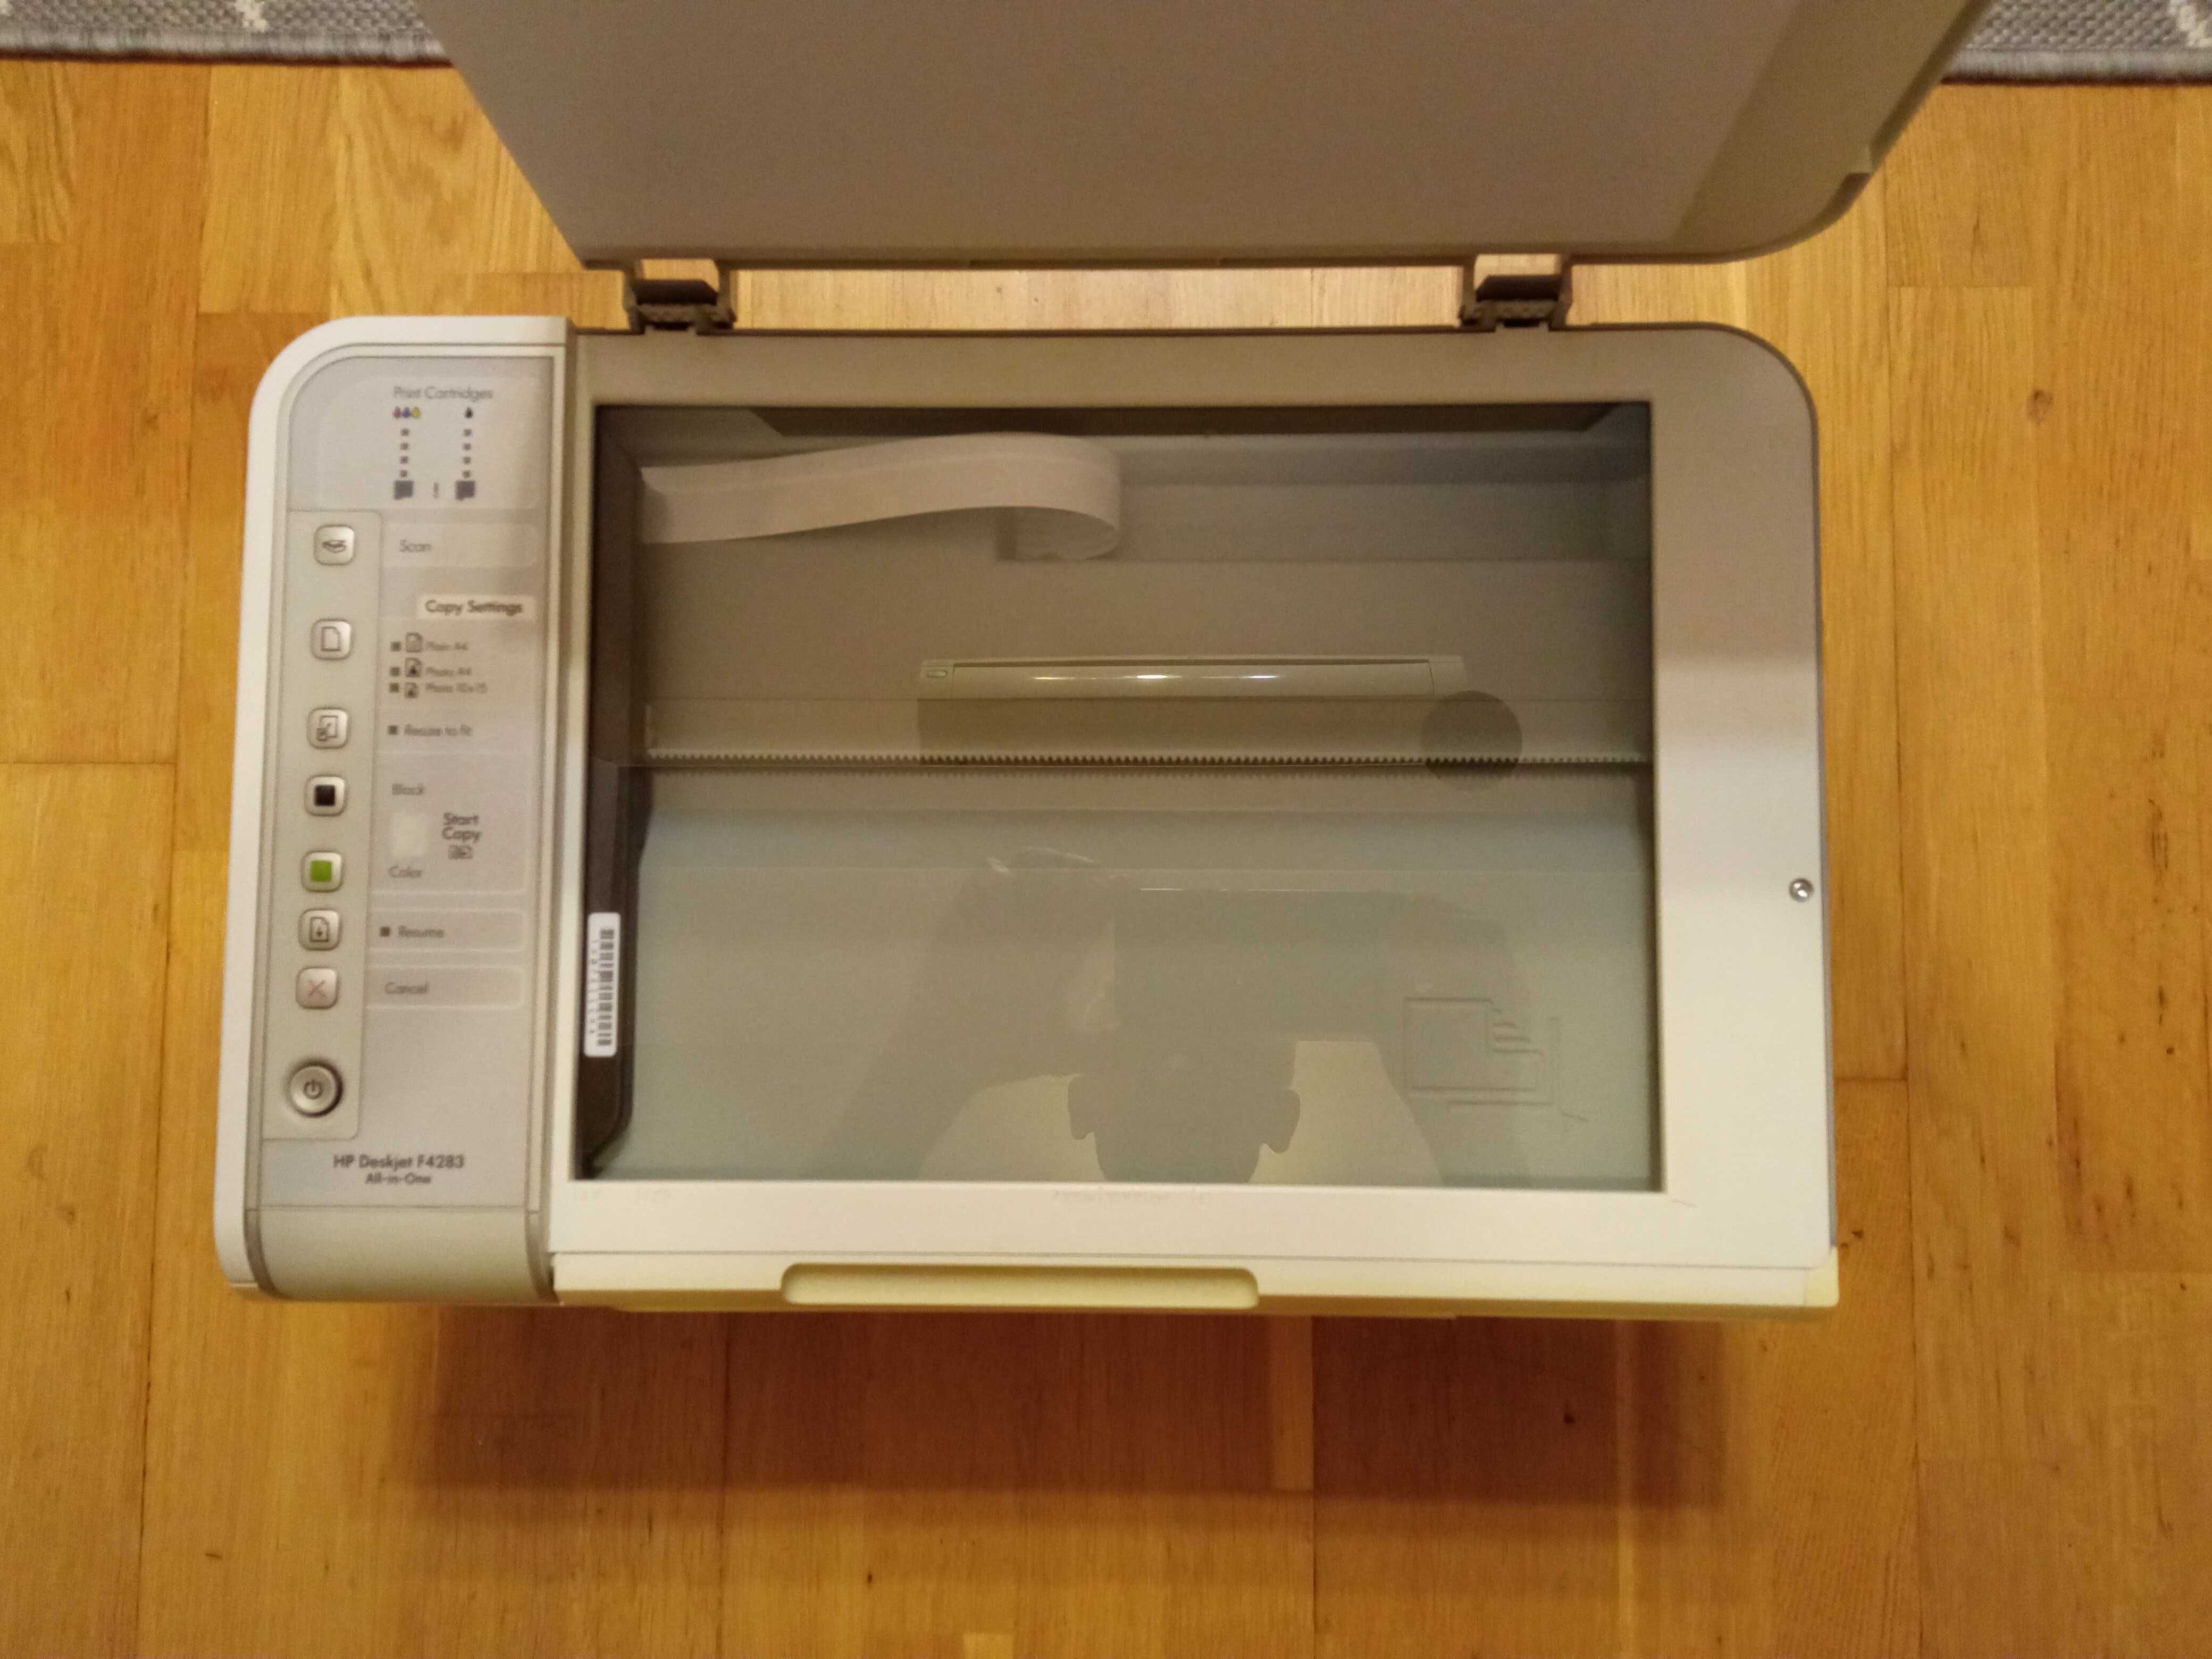 Принтер кольоровий HP Deskjet F4283